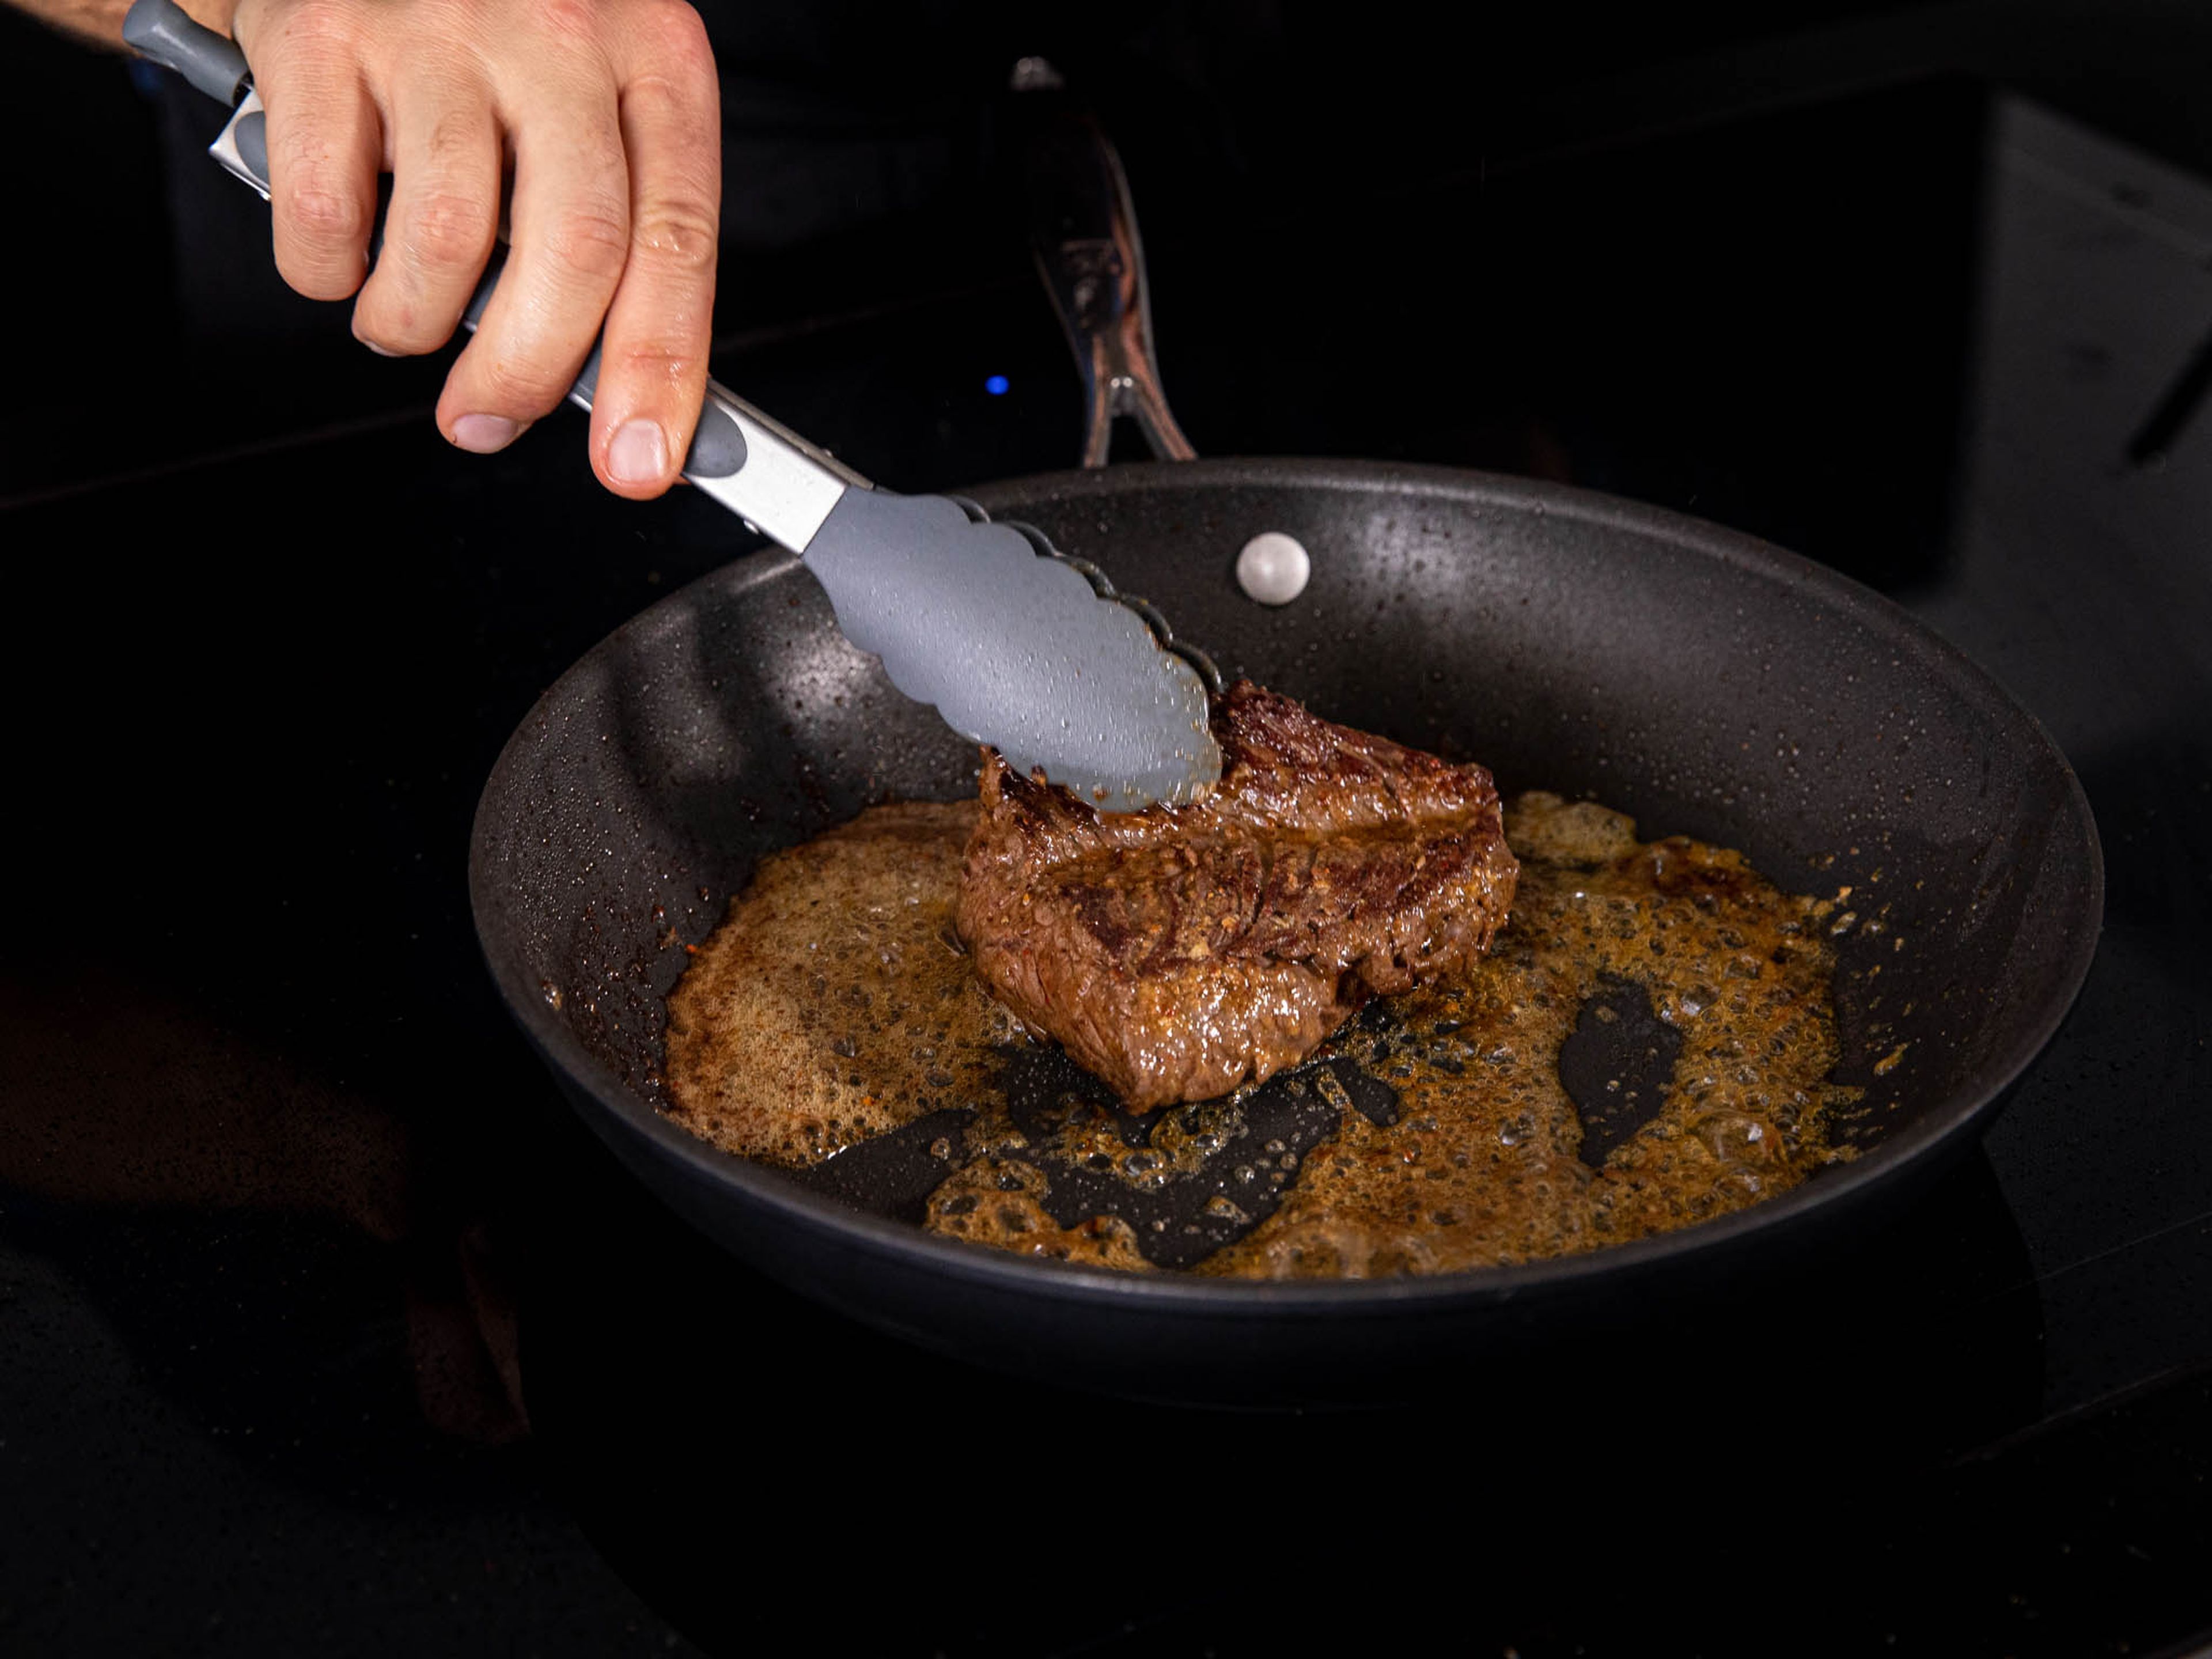 Stelle eine beschichtete Bratpfanne auf mittlere bis hohe Hitze. Das Öl hinzufügen und für 1 – 2 Minuten erhitzen. Jetzt das Steak mit Salz würzen. Sobald die Pfanne sehr heiß ist, das Steak hineinlegen und für 1 Minute unangetastet scharf anbraten. Das Steak wenden und für 1 Minute weiter braten. Jetzt etwa ein weiteres Drittel der restlichen Butter hinzugeben und das Steak 45 Sekunden auf jeder Seite fertig braten. Wenn du ein Küchenthermometer hast, überprüfe, ob die Mitte des Steaks etwa 53°C hat. Das bedeutet, dass das Steak, nach dem Ruhen, Medium rare ist. Perfekt für diese Art von Steak. Nehme das Steak heraus und lasse es 4 Minuten auf einer warmen Platte oder einem Teller ruhen.